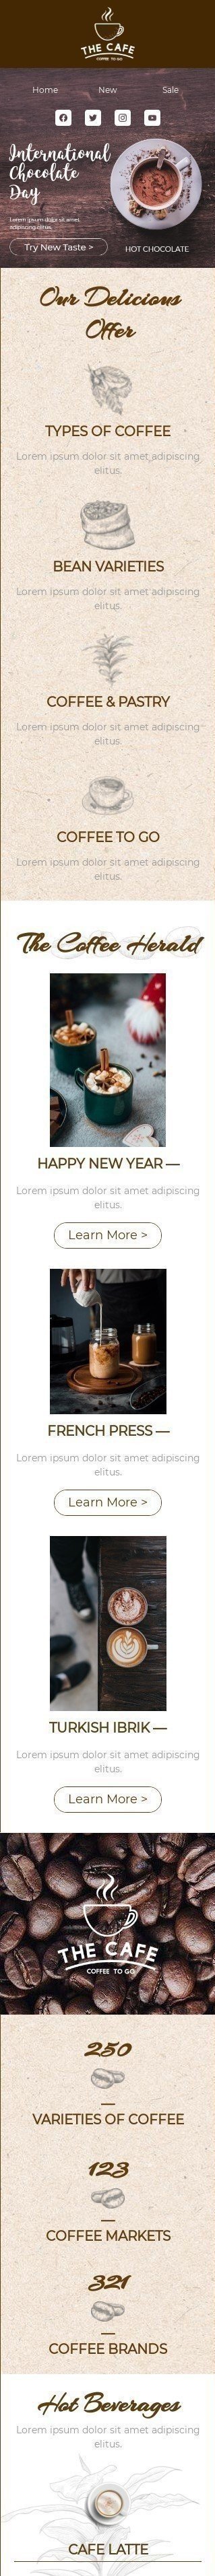 Der internationale Tag der Schokolade E-Mail-Vorlage «Probieren Sie einen neuen Geschmack» für Getränke-Branche mobile view